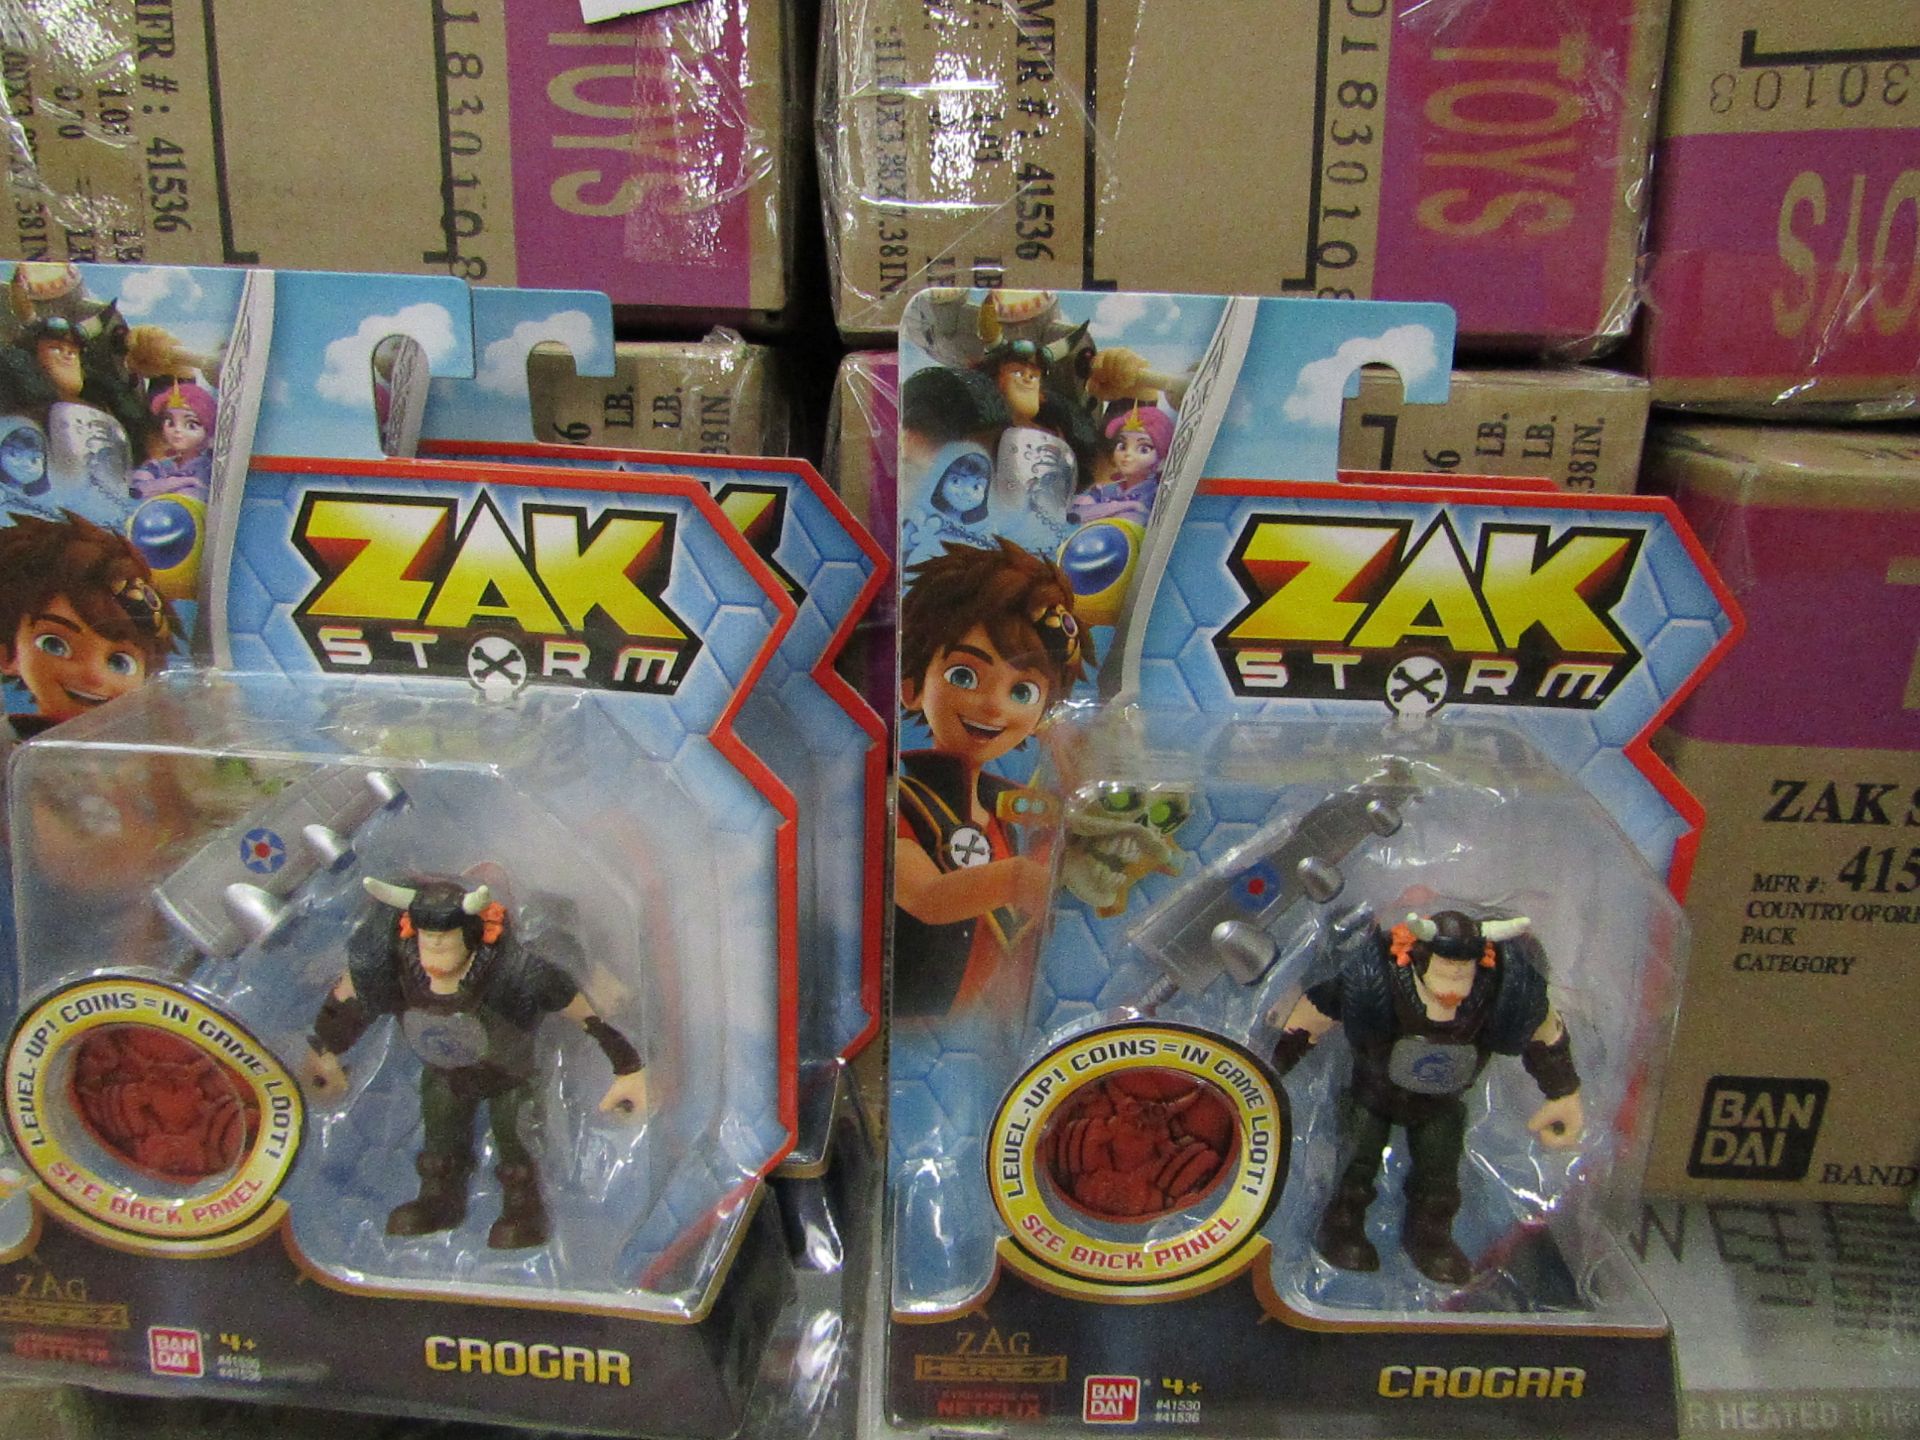 4 x Zak Storm Crogar Figures - New & Boxed.